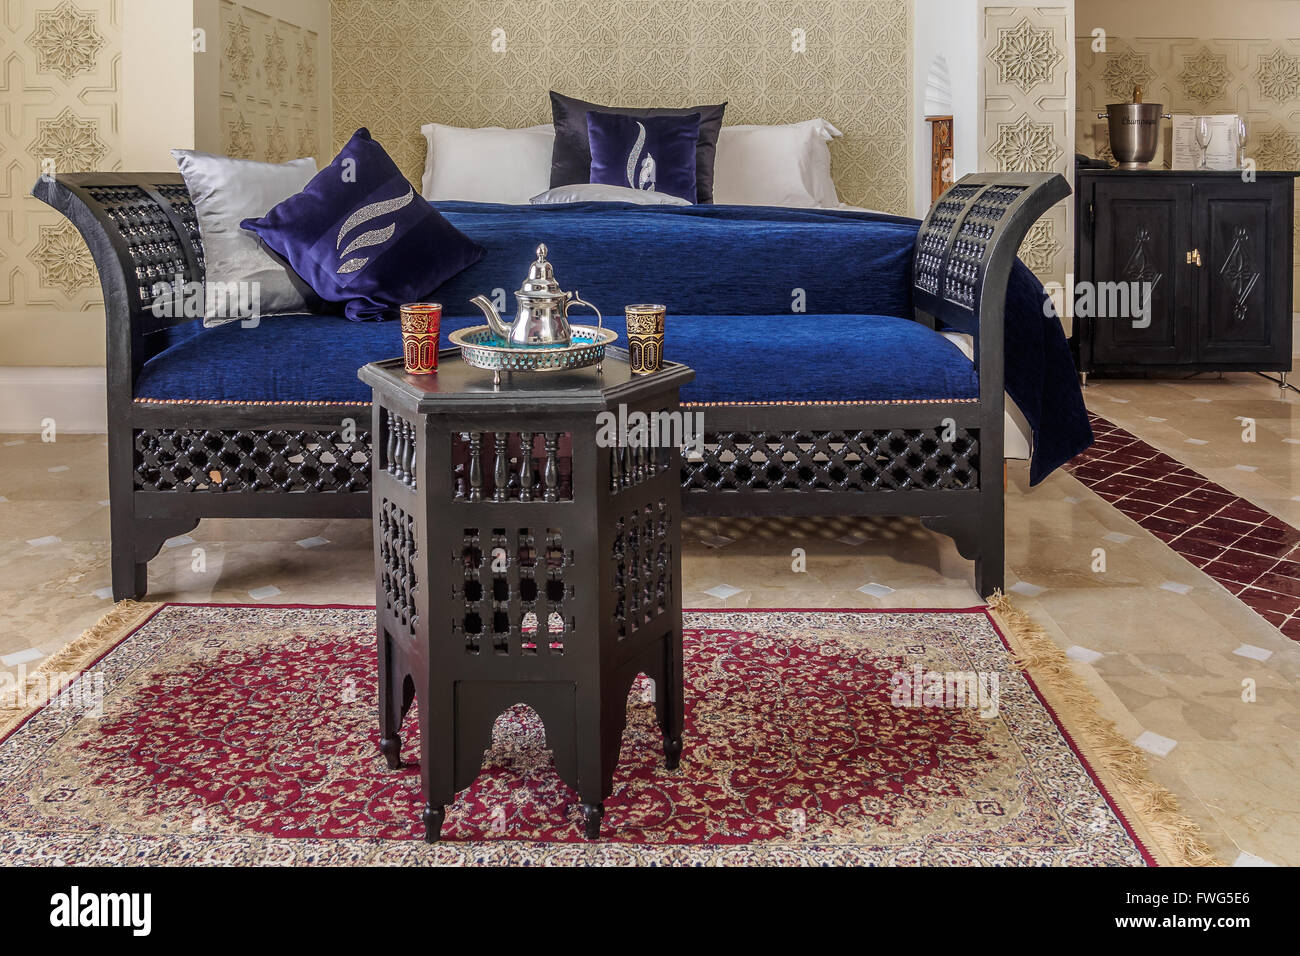 Suite de luxe chambres et de la table de style marocain Banque D'Images